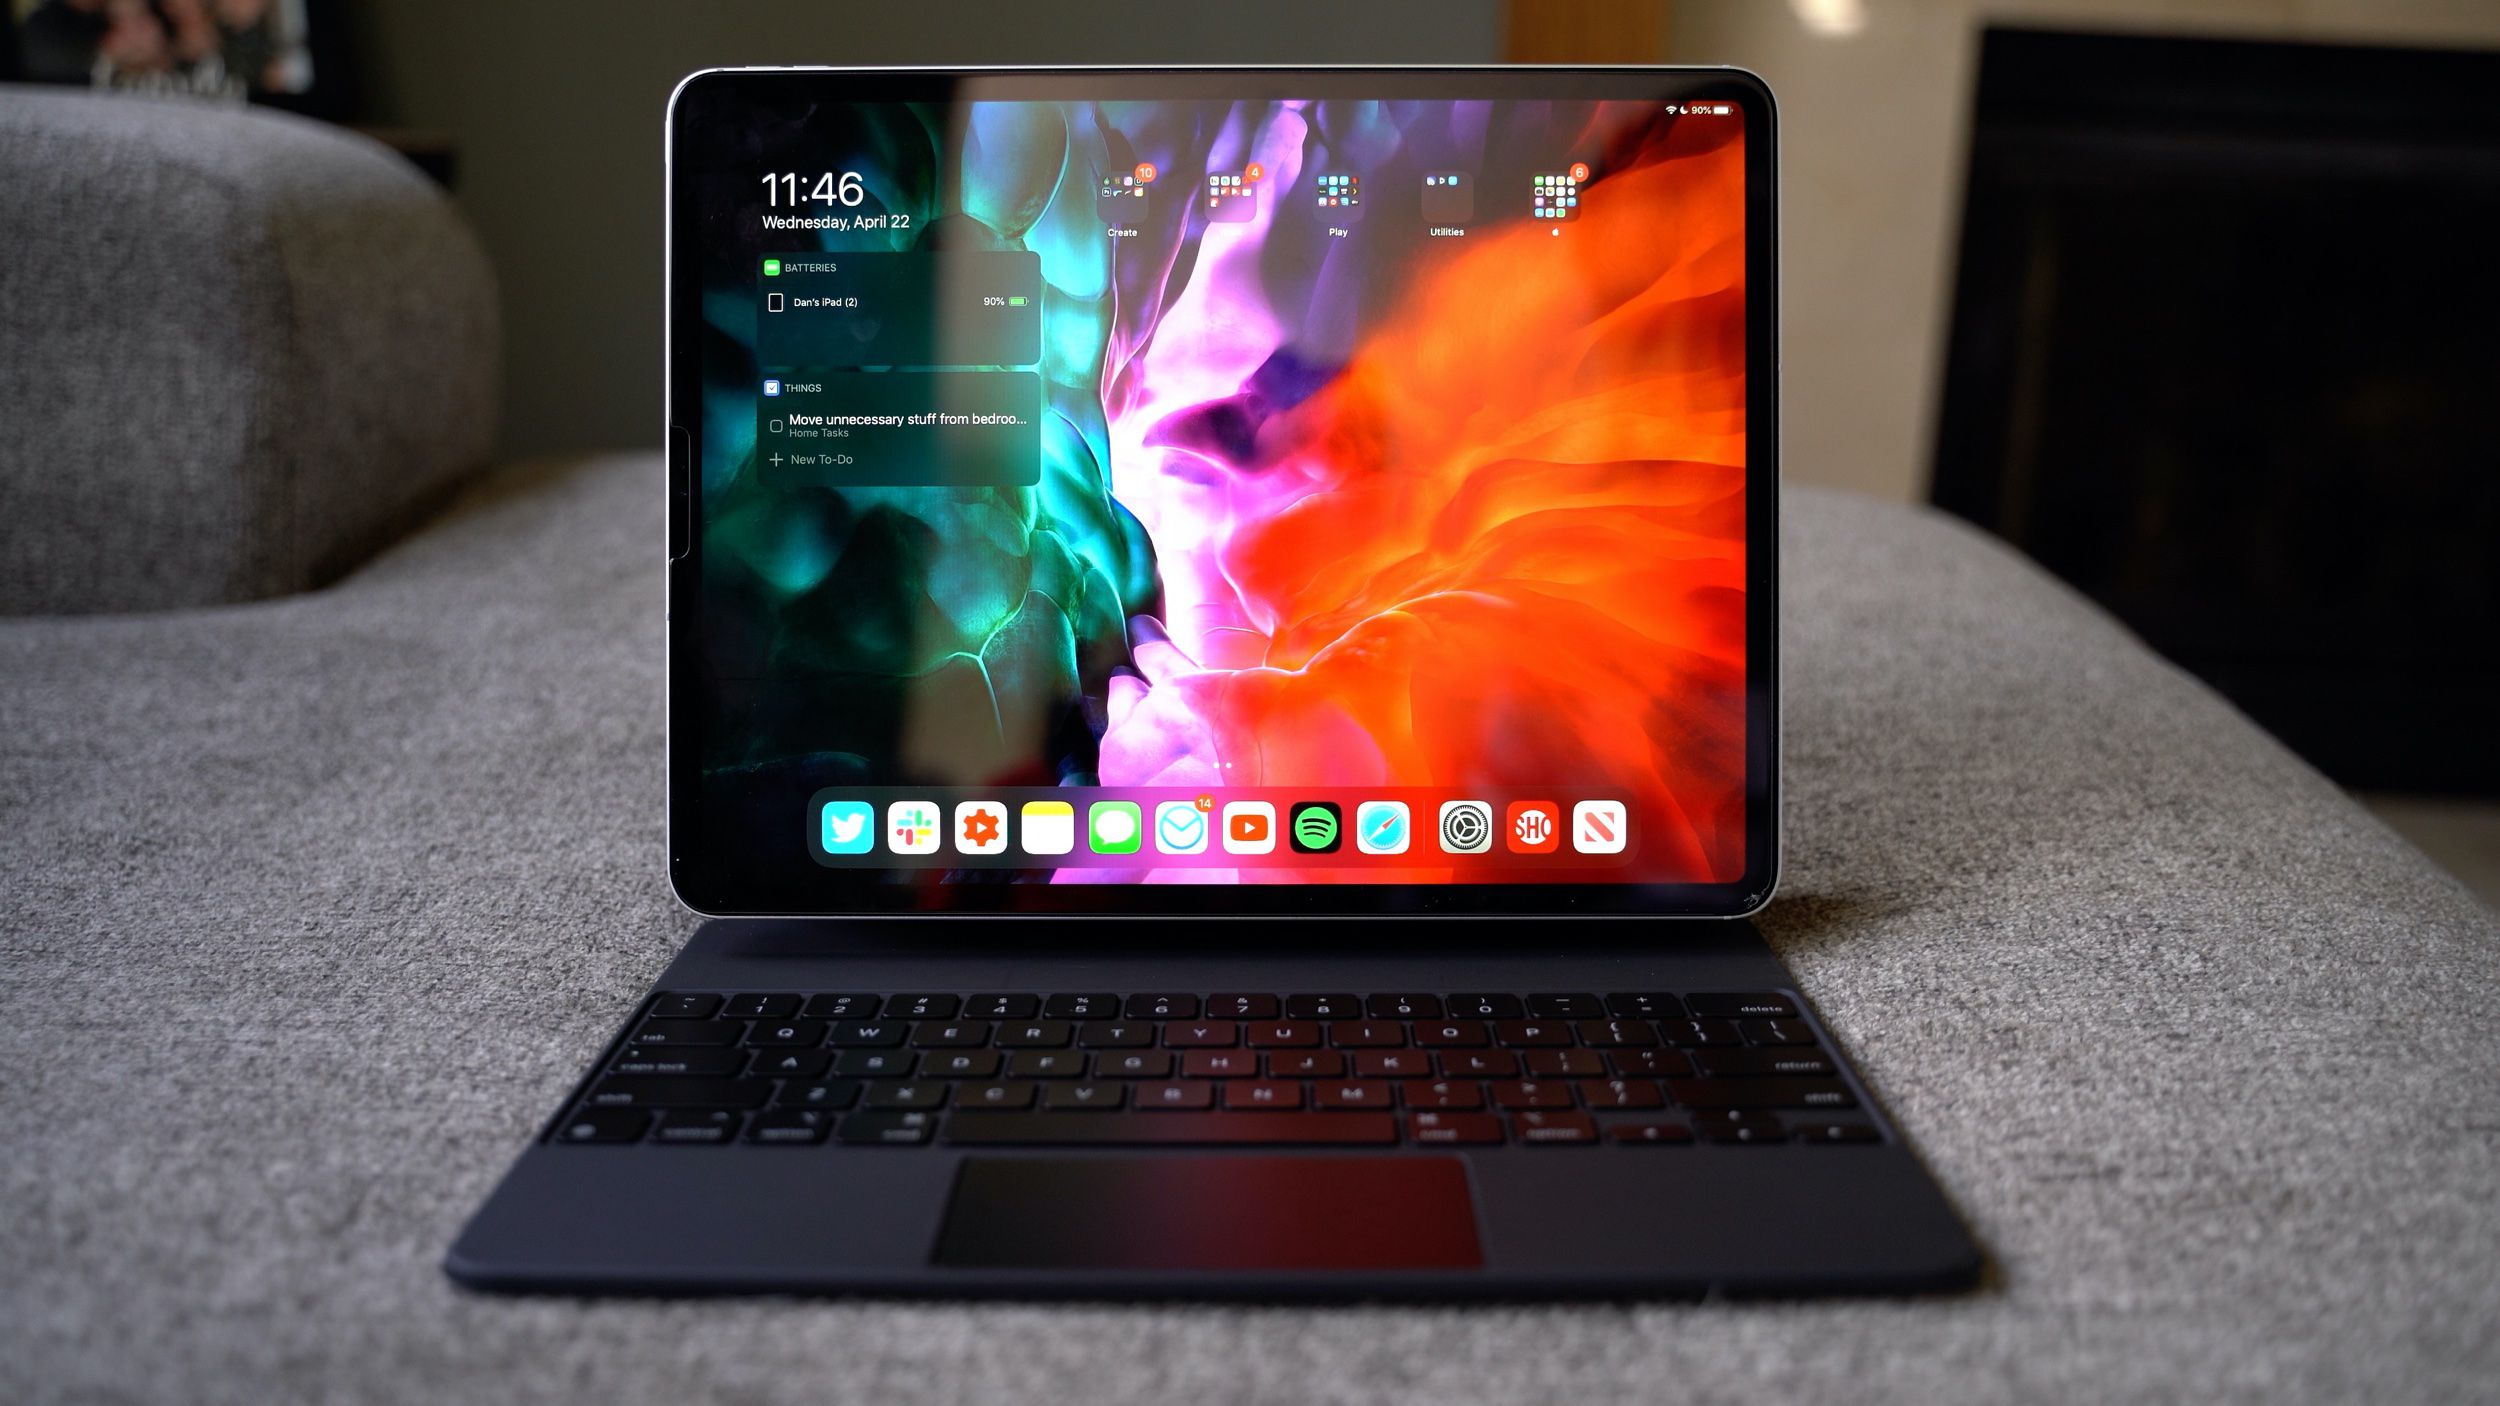 Patente da Apple sugere que o futuro iPad pode se transformar em uma experiência semelhante ao macOS quando conectado a um teclado